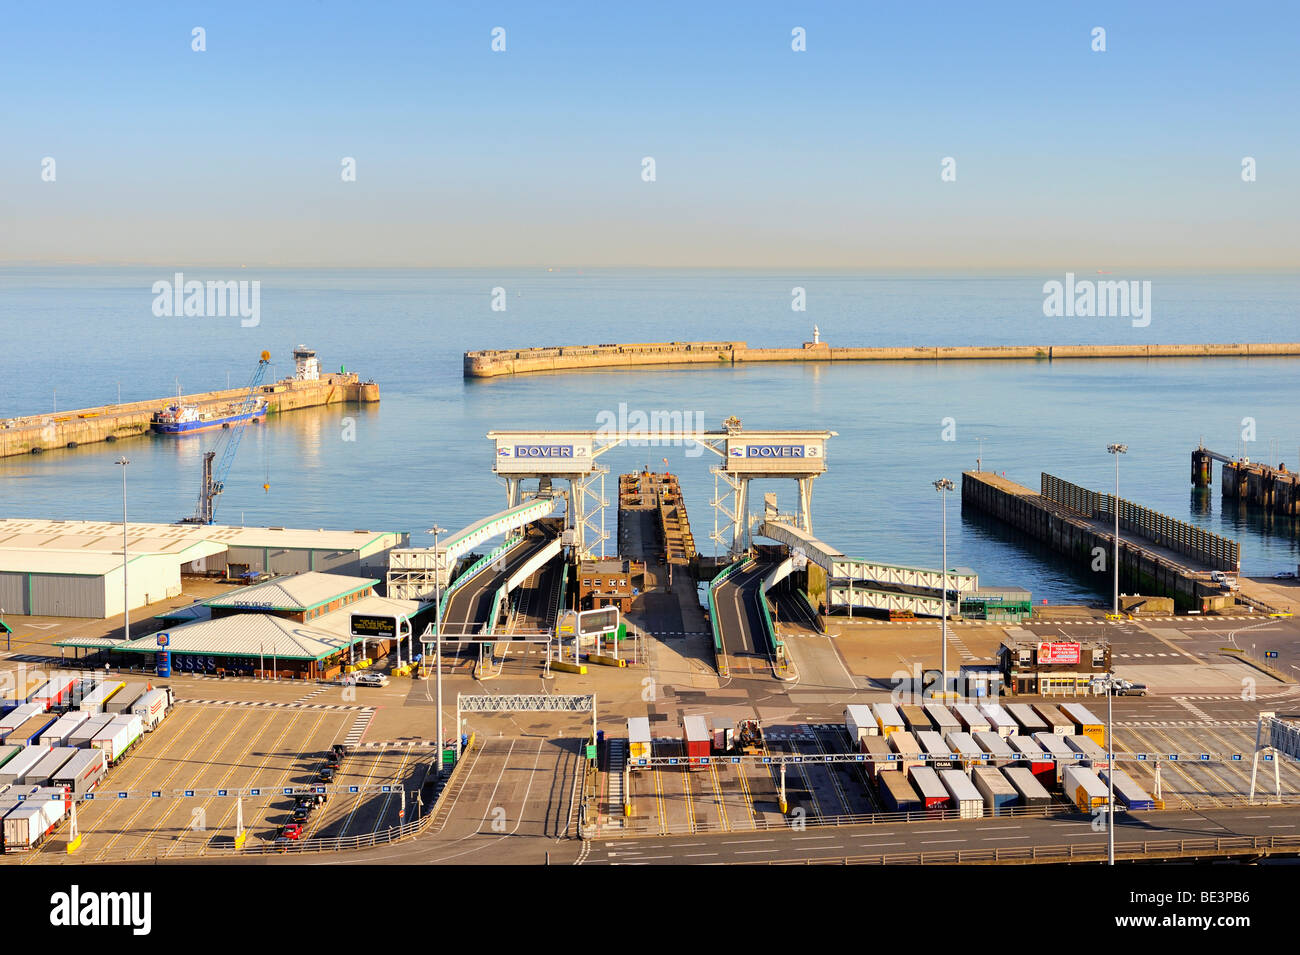 Vue de l'Est de l'embarcadère des ferries de Douvres, Kent, Angleterre, Royaume-Uni, Europe Banque D'Images